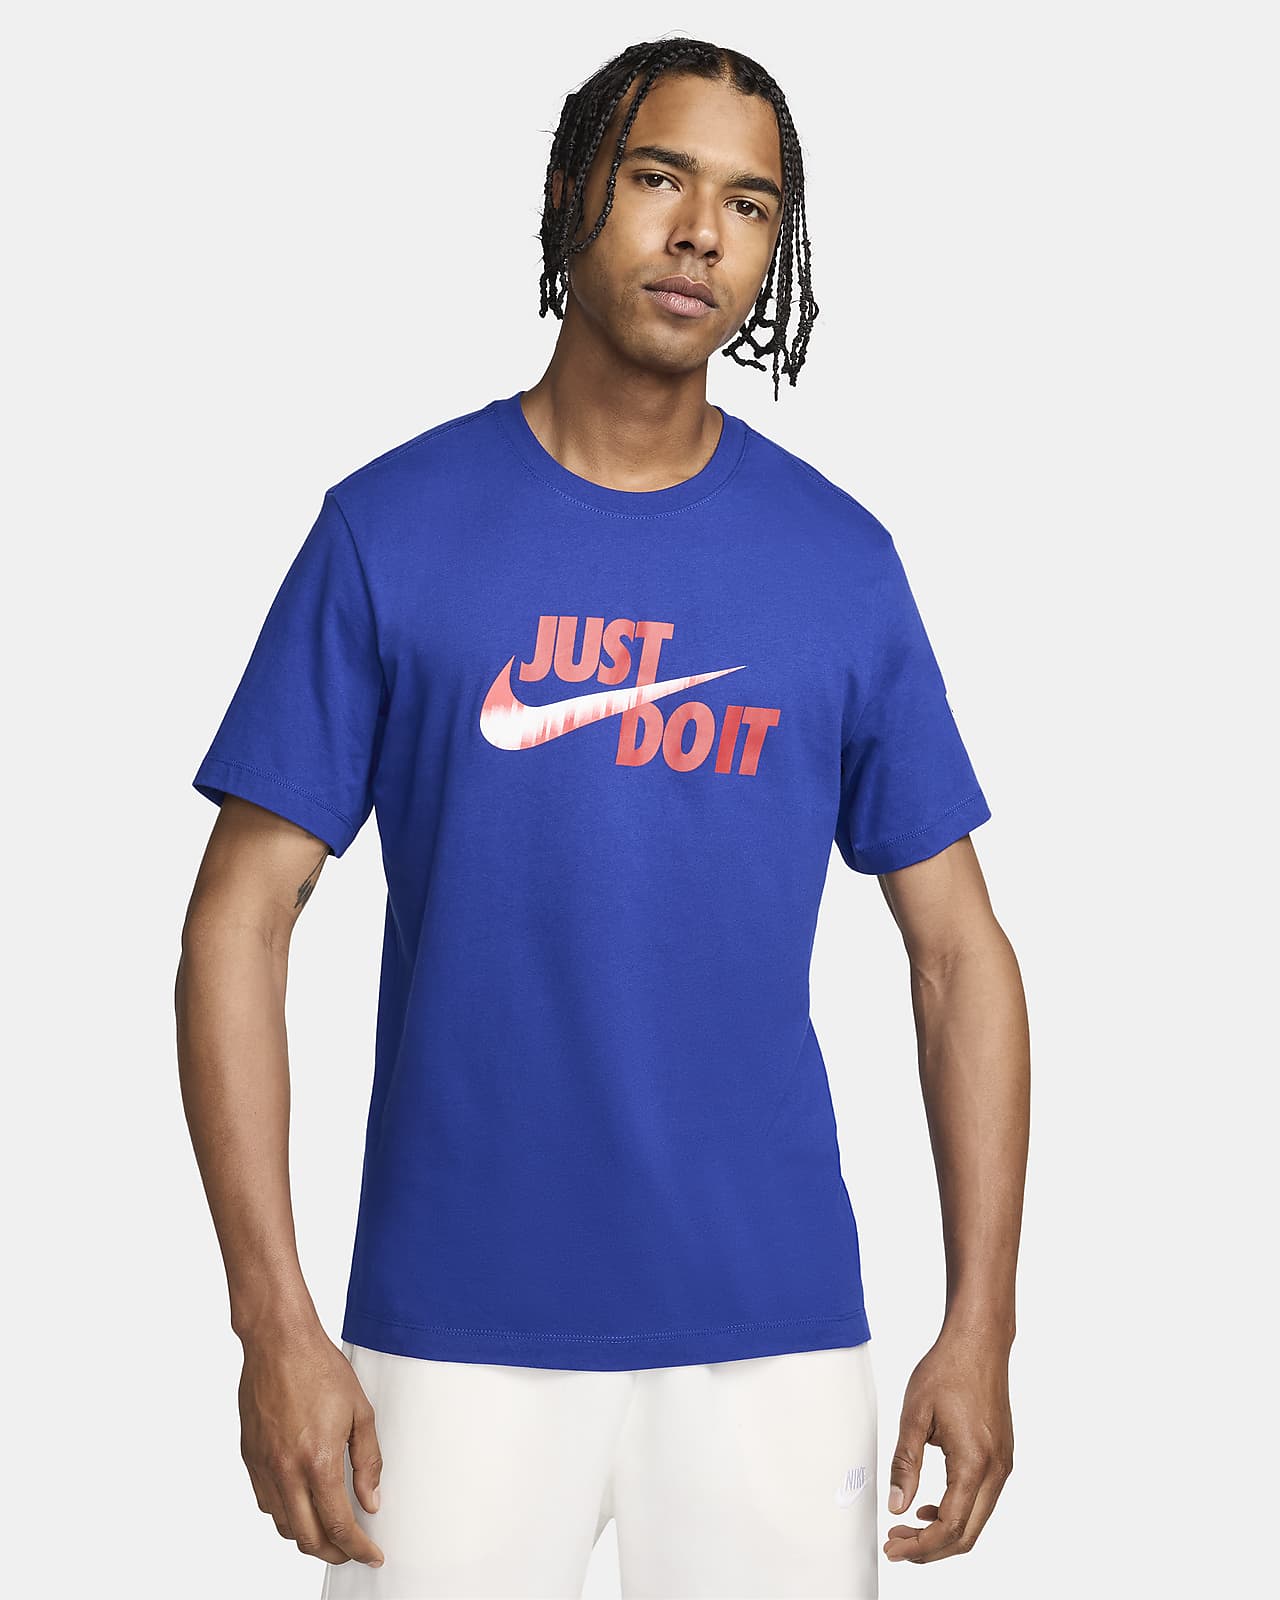 USMNT Men's Nike Soccer T-Shirt